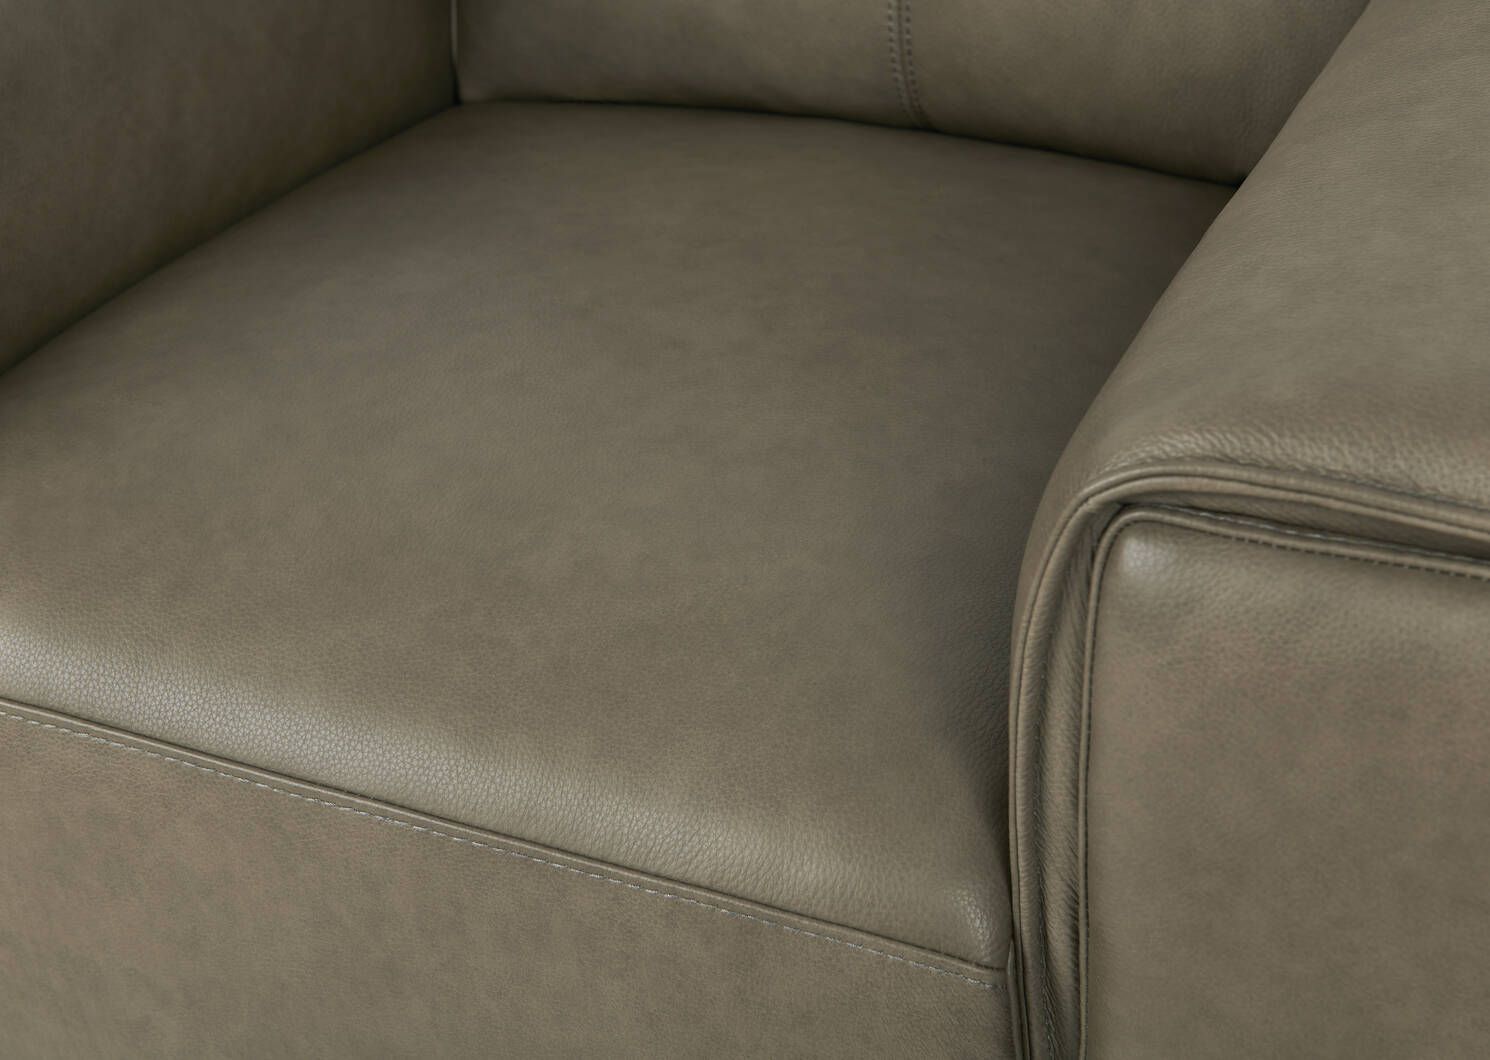 Alton Leather Armchair -Mira Stone